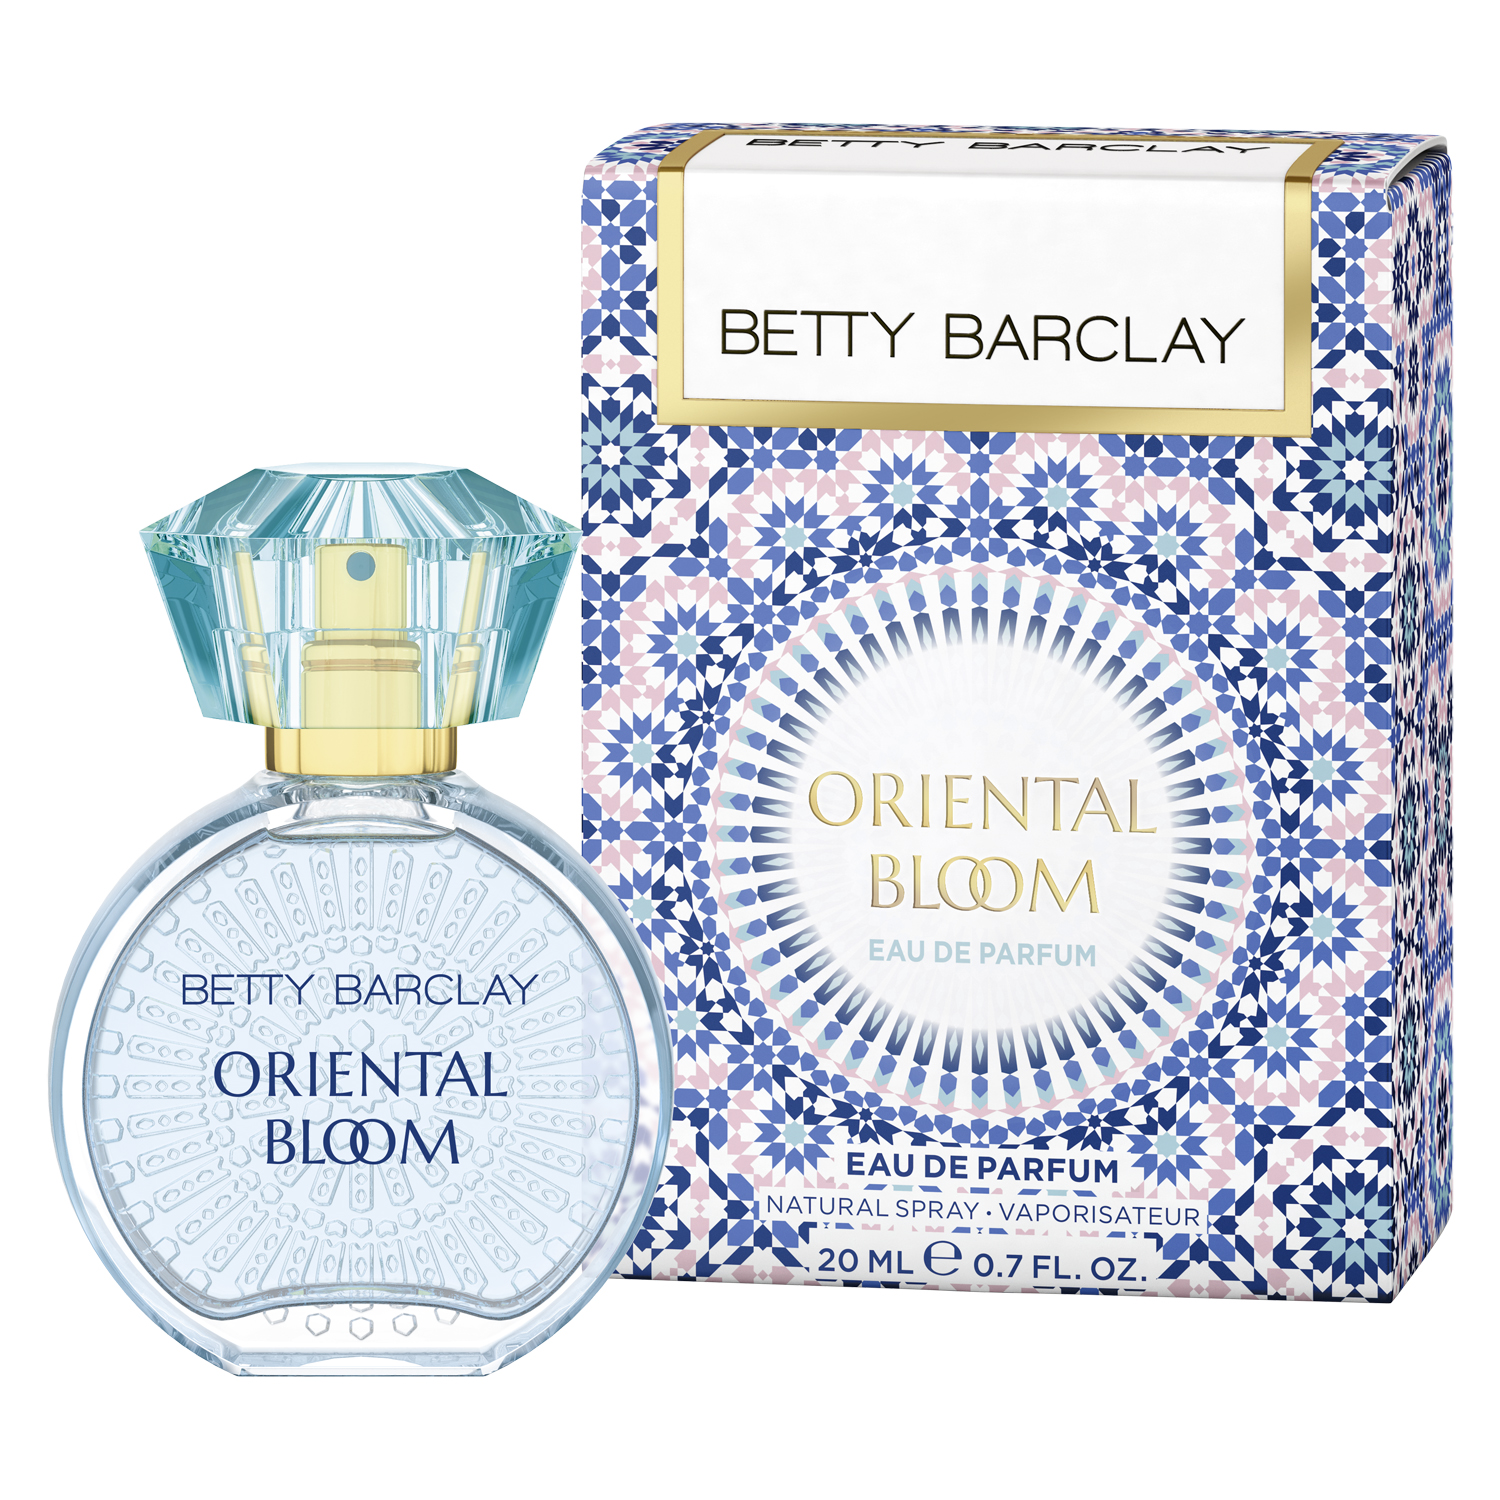 Betty Barclay Oriental Bloom Eau de Parfum 20ml